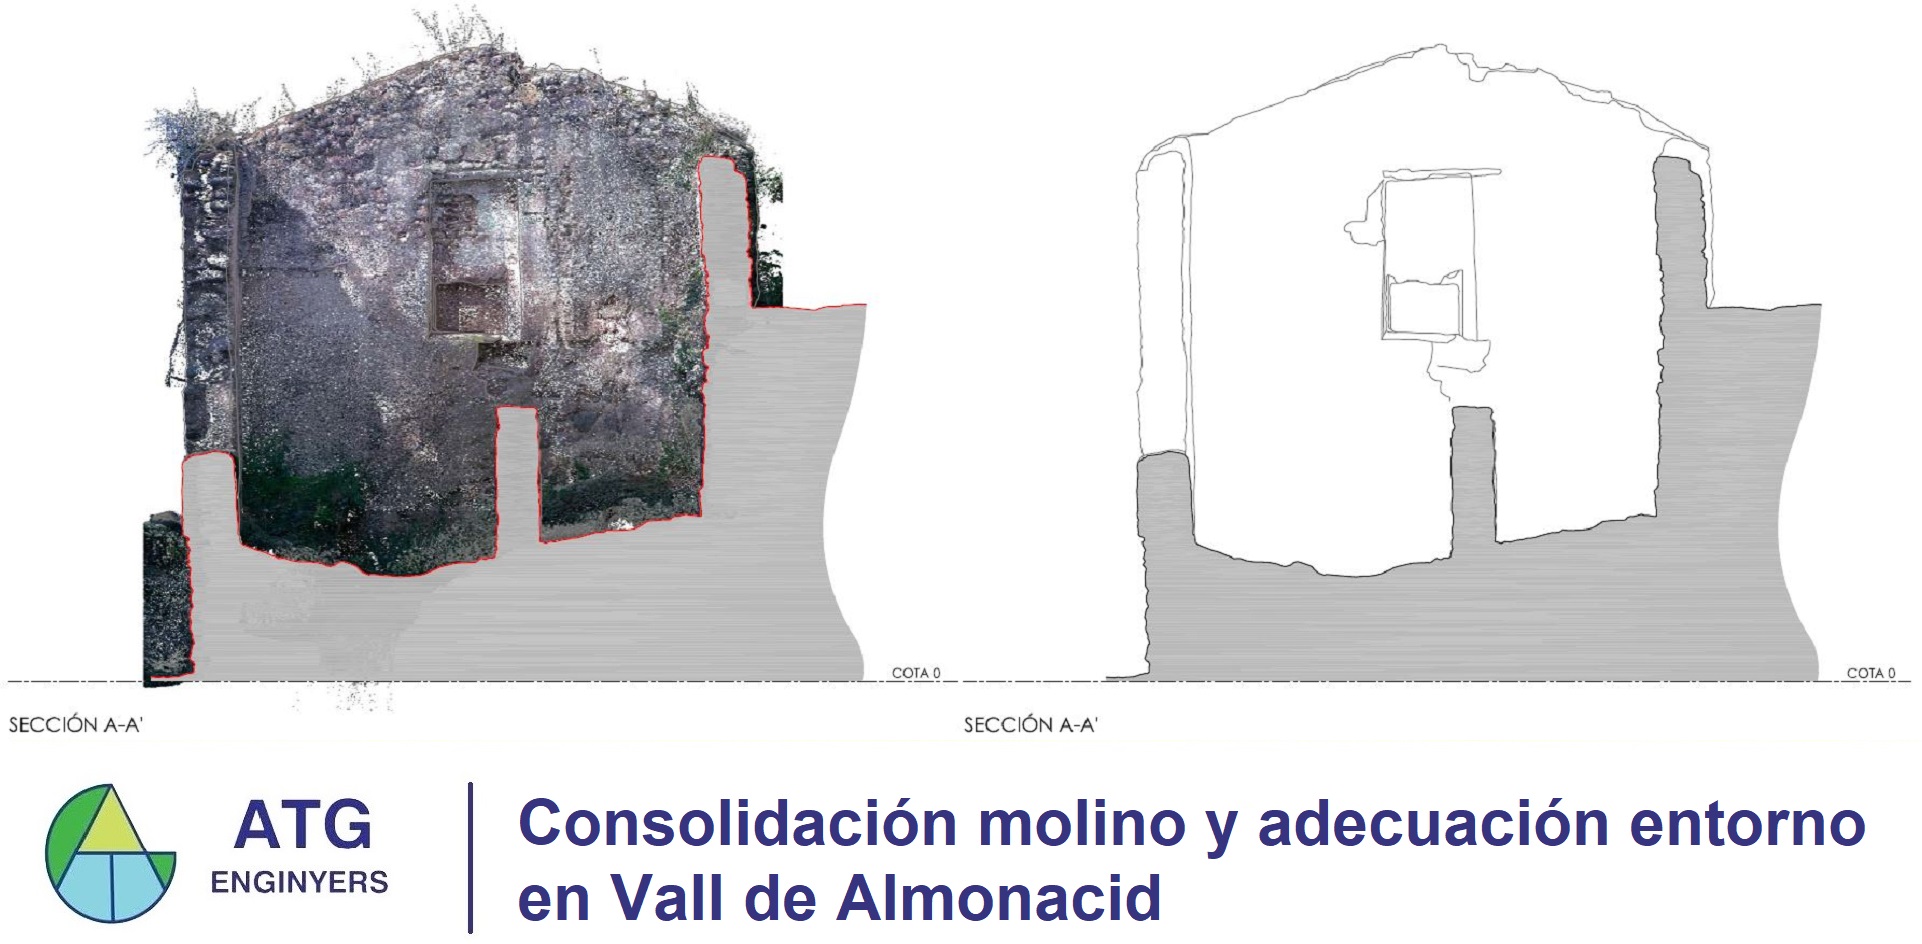 Consolidación molino y adecuación entorno - Vall de Almonacid